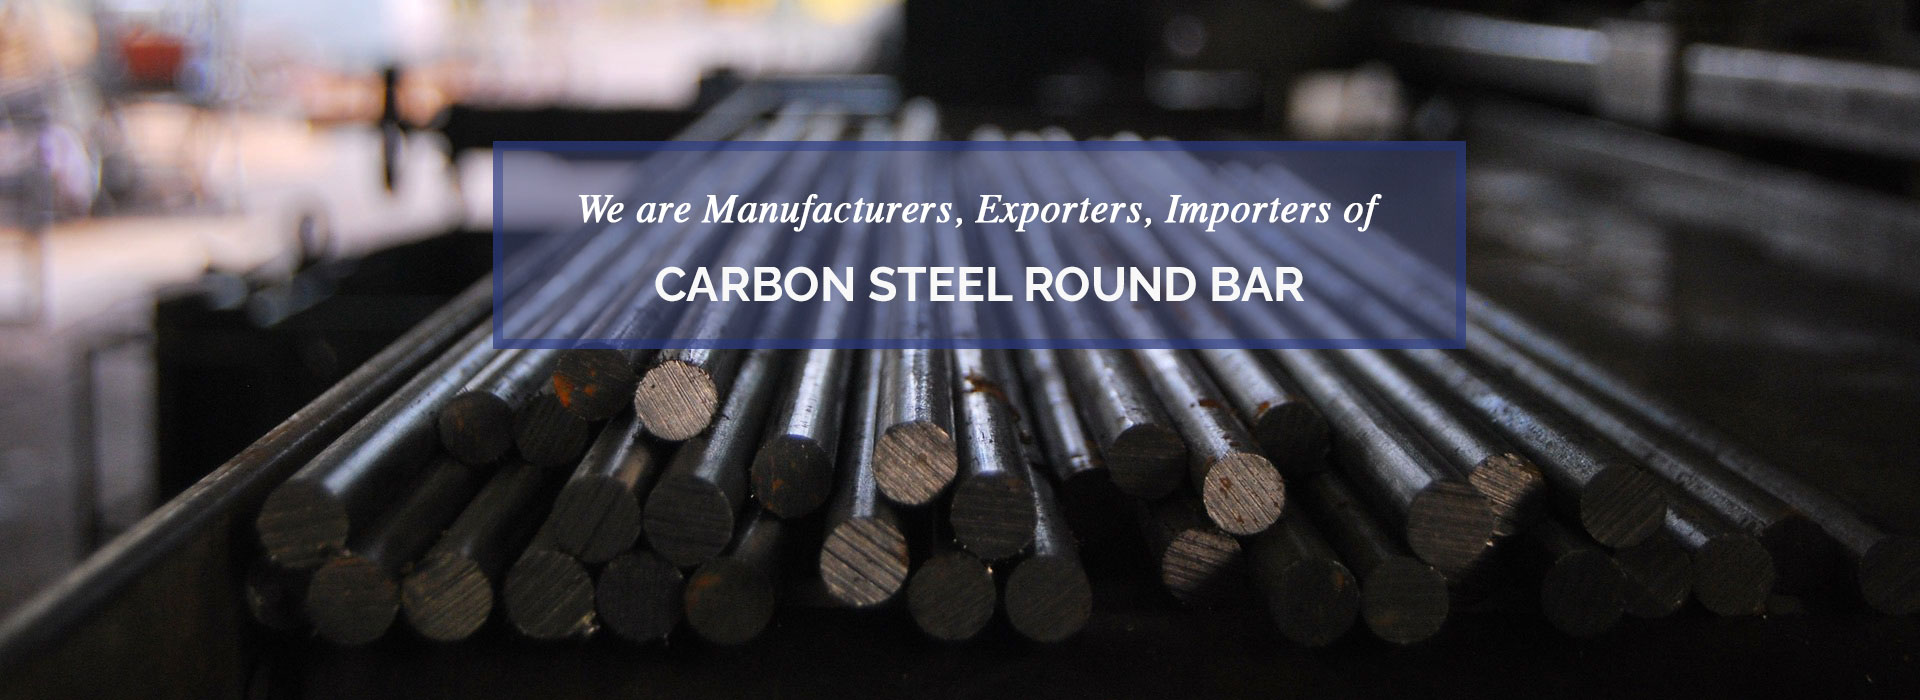 Carbon Steel Round Bar Manufacturers in Iran